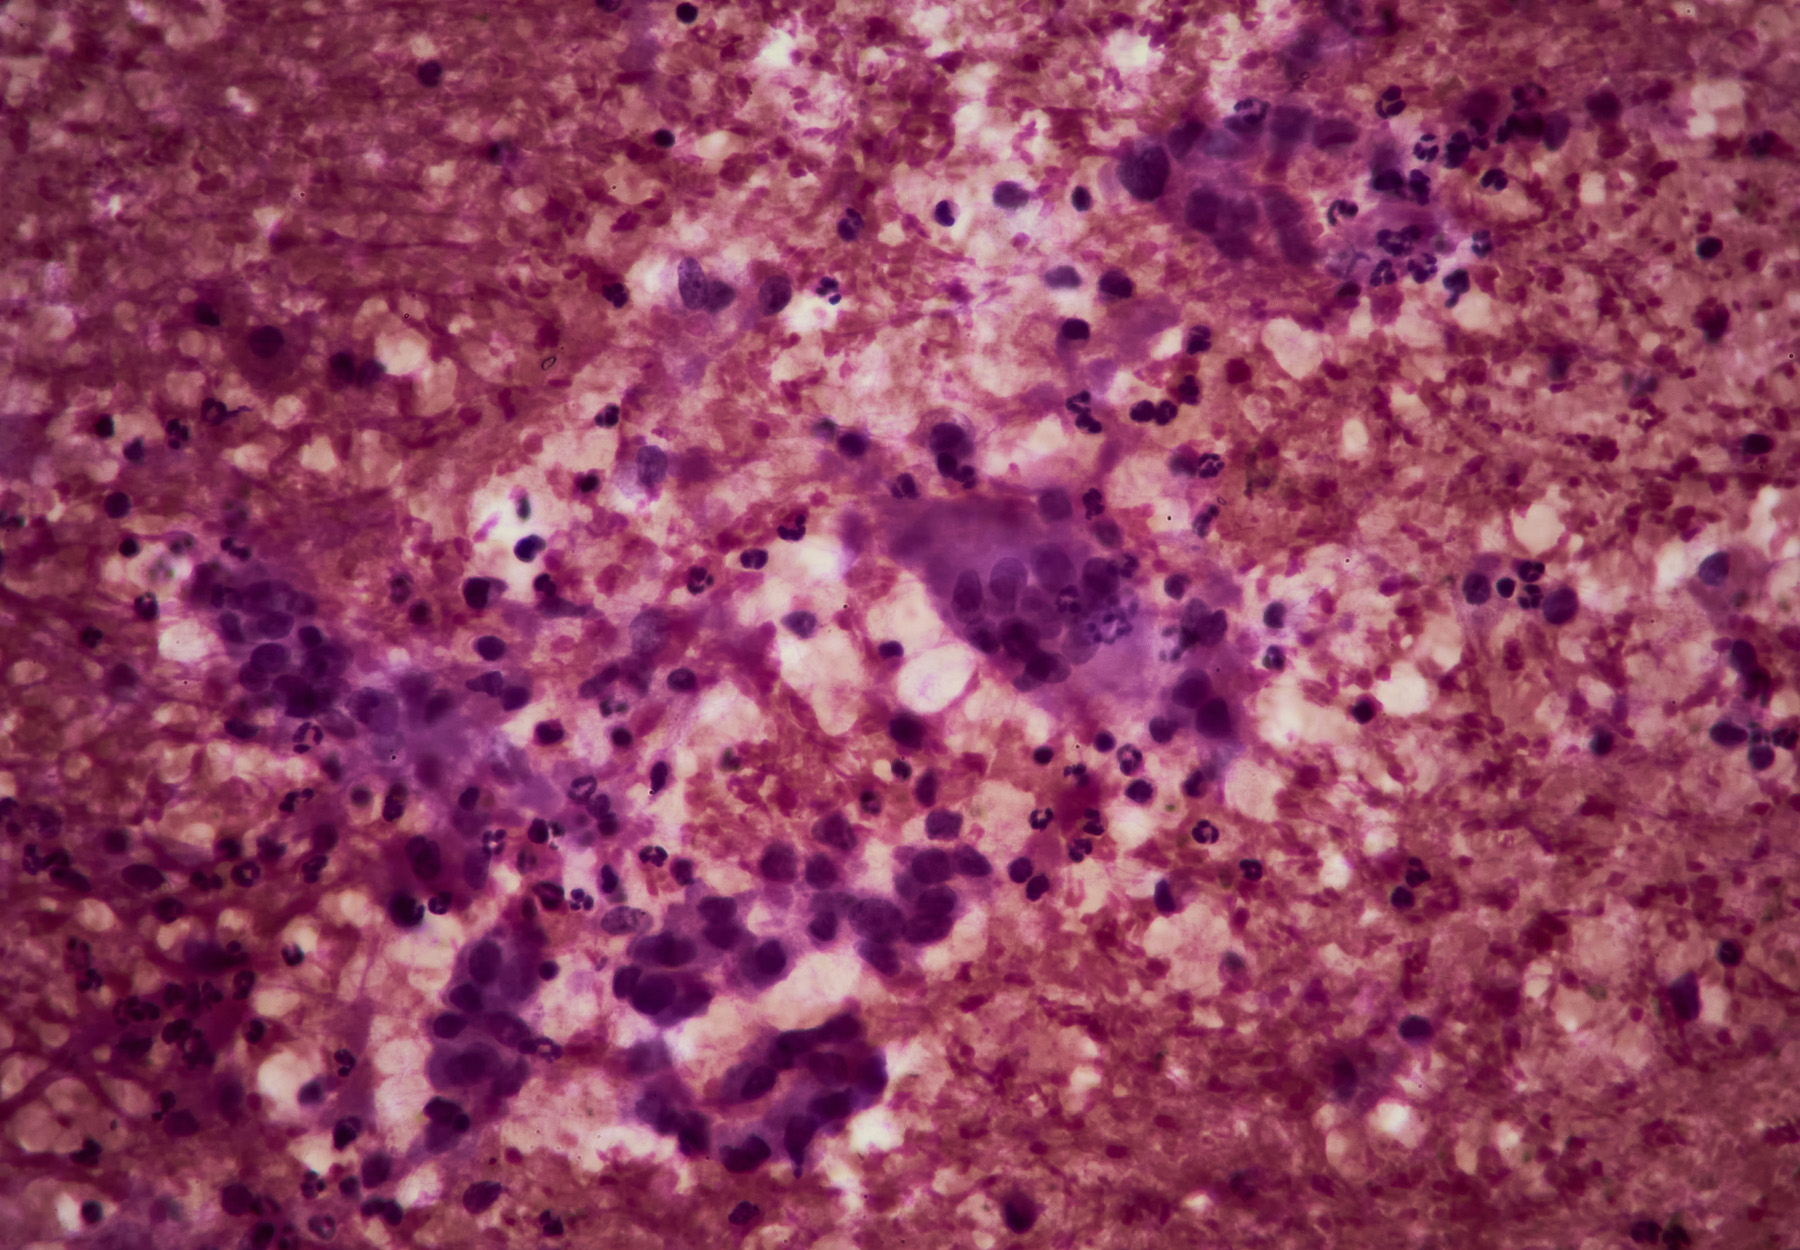 Tissue sample displaying pancreatic cancer. Stock image.